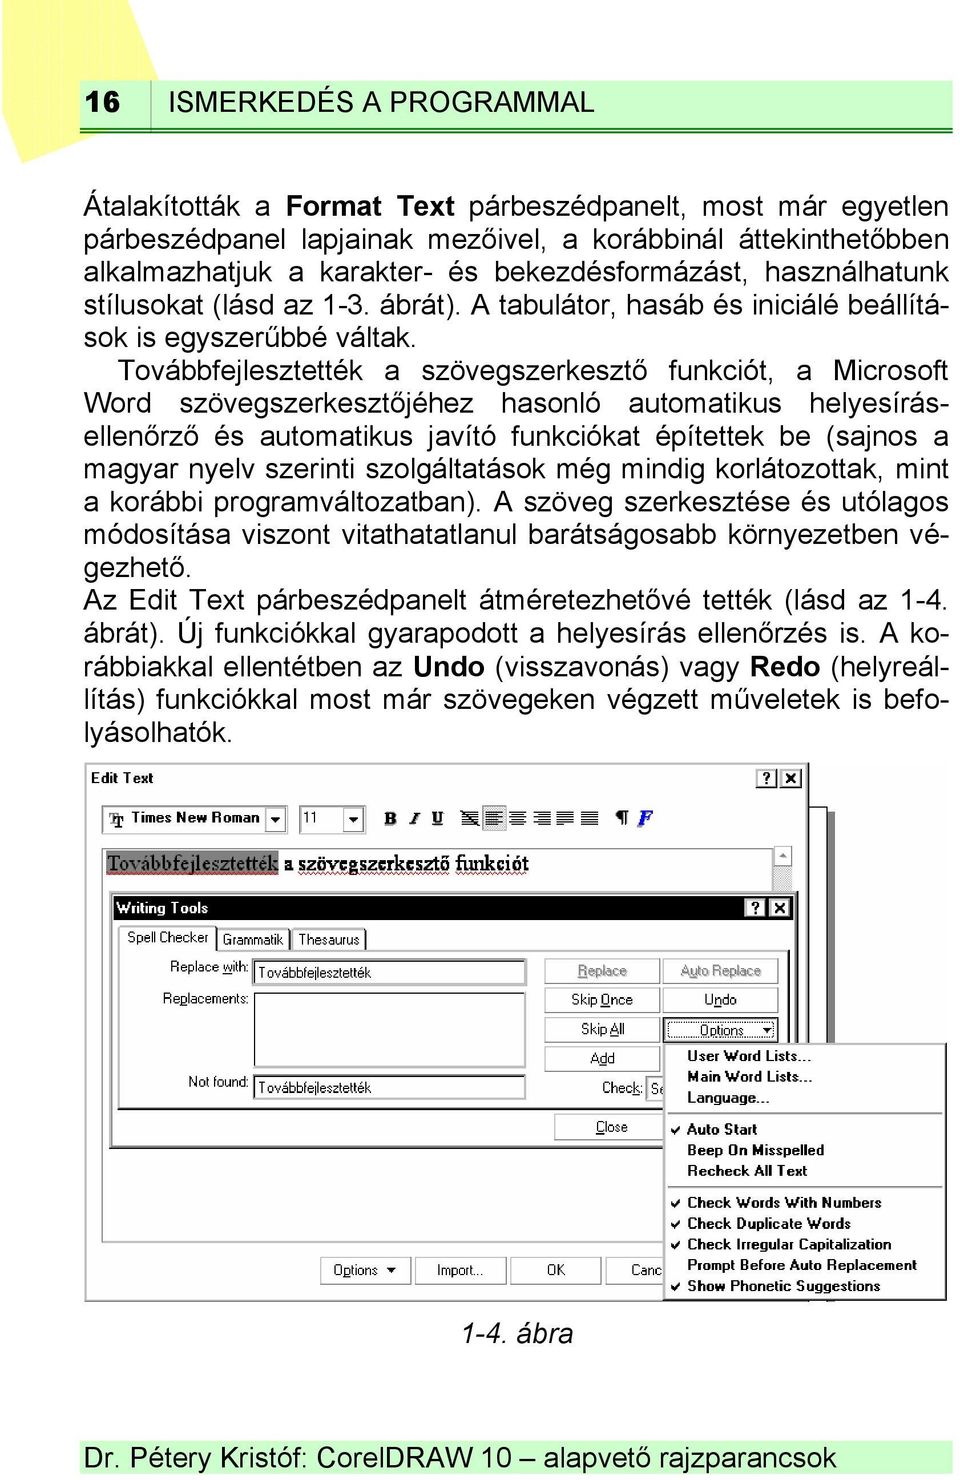 Továbbfejlesztették a szövegszerkesztő funkciót, a Microsoft Word szövegszerkesztőjéhez hasonló automatikus helyesírásellenőrző és automatikus javító funkciókat építettek be (sajnos a magyar nyelv